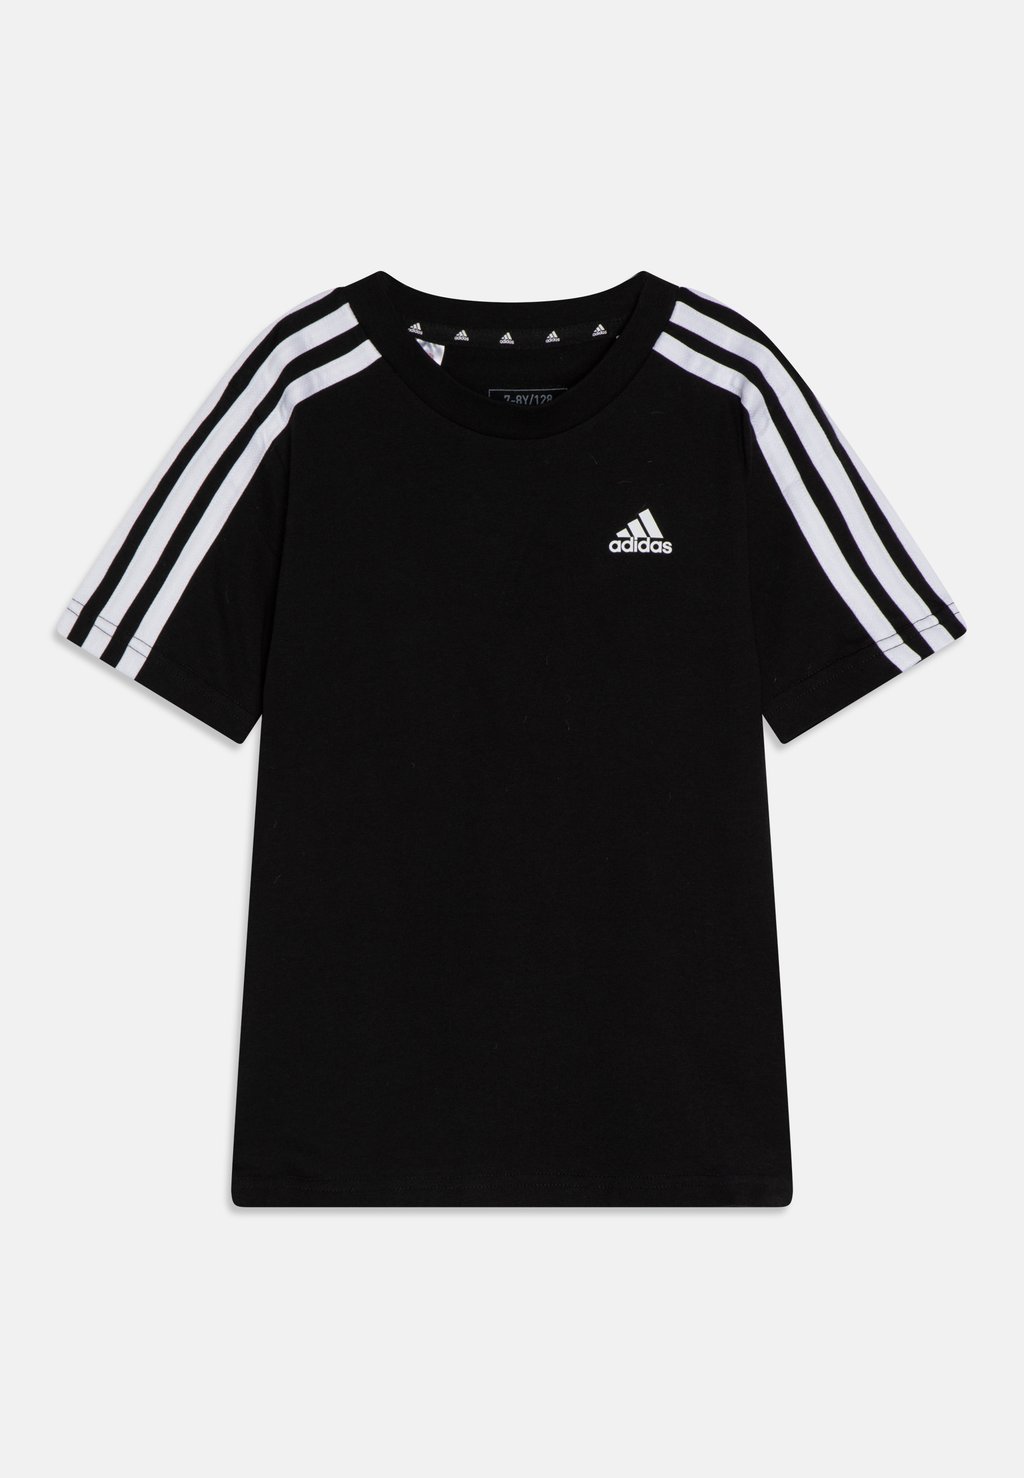 Футболка с принтом Adidas, чёрная/белая aseven чёрная футболка с принтом aseven